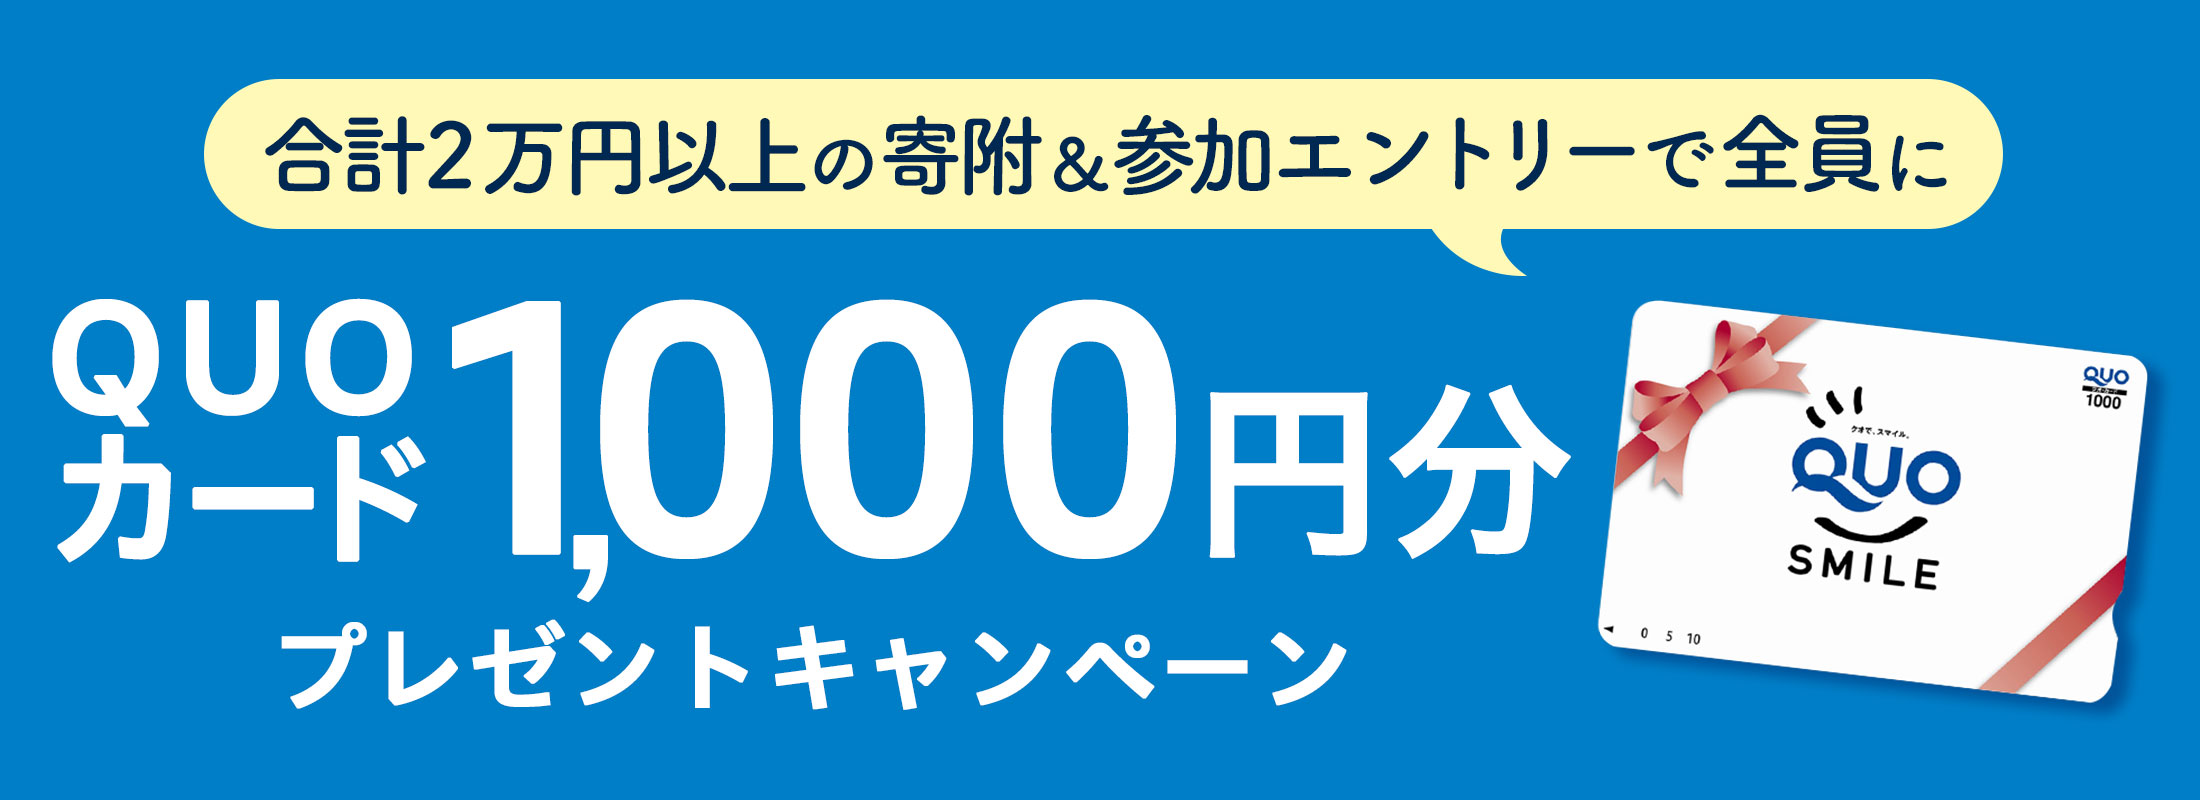 合計2万円以上の寄附＆参加エントリーしていただいた全員に「QUOカード1,000円分」プレゼントキャンペーン